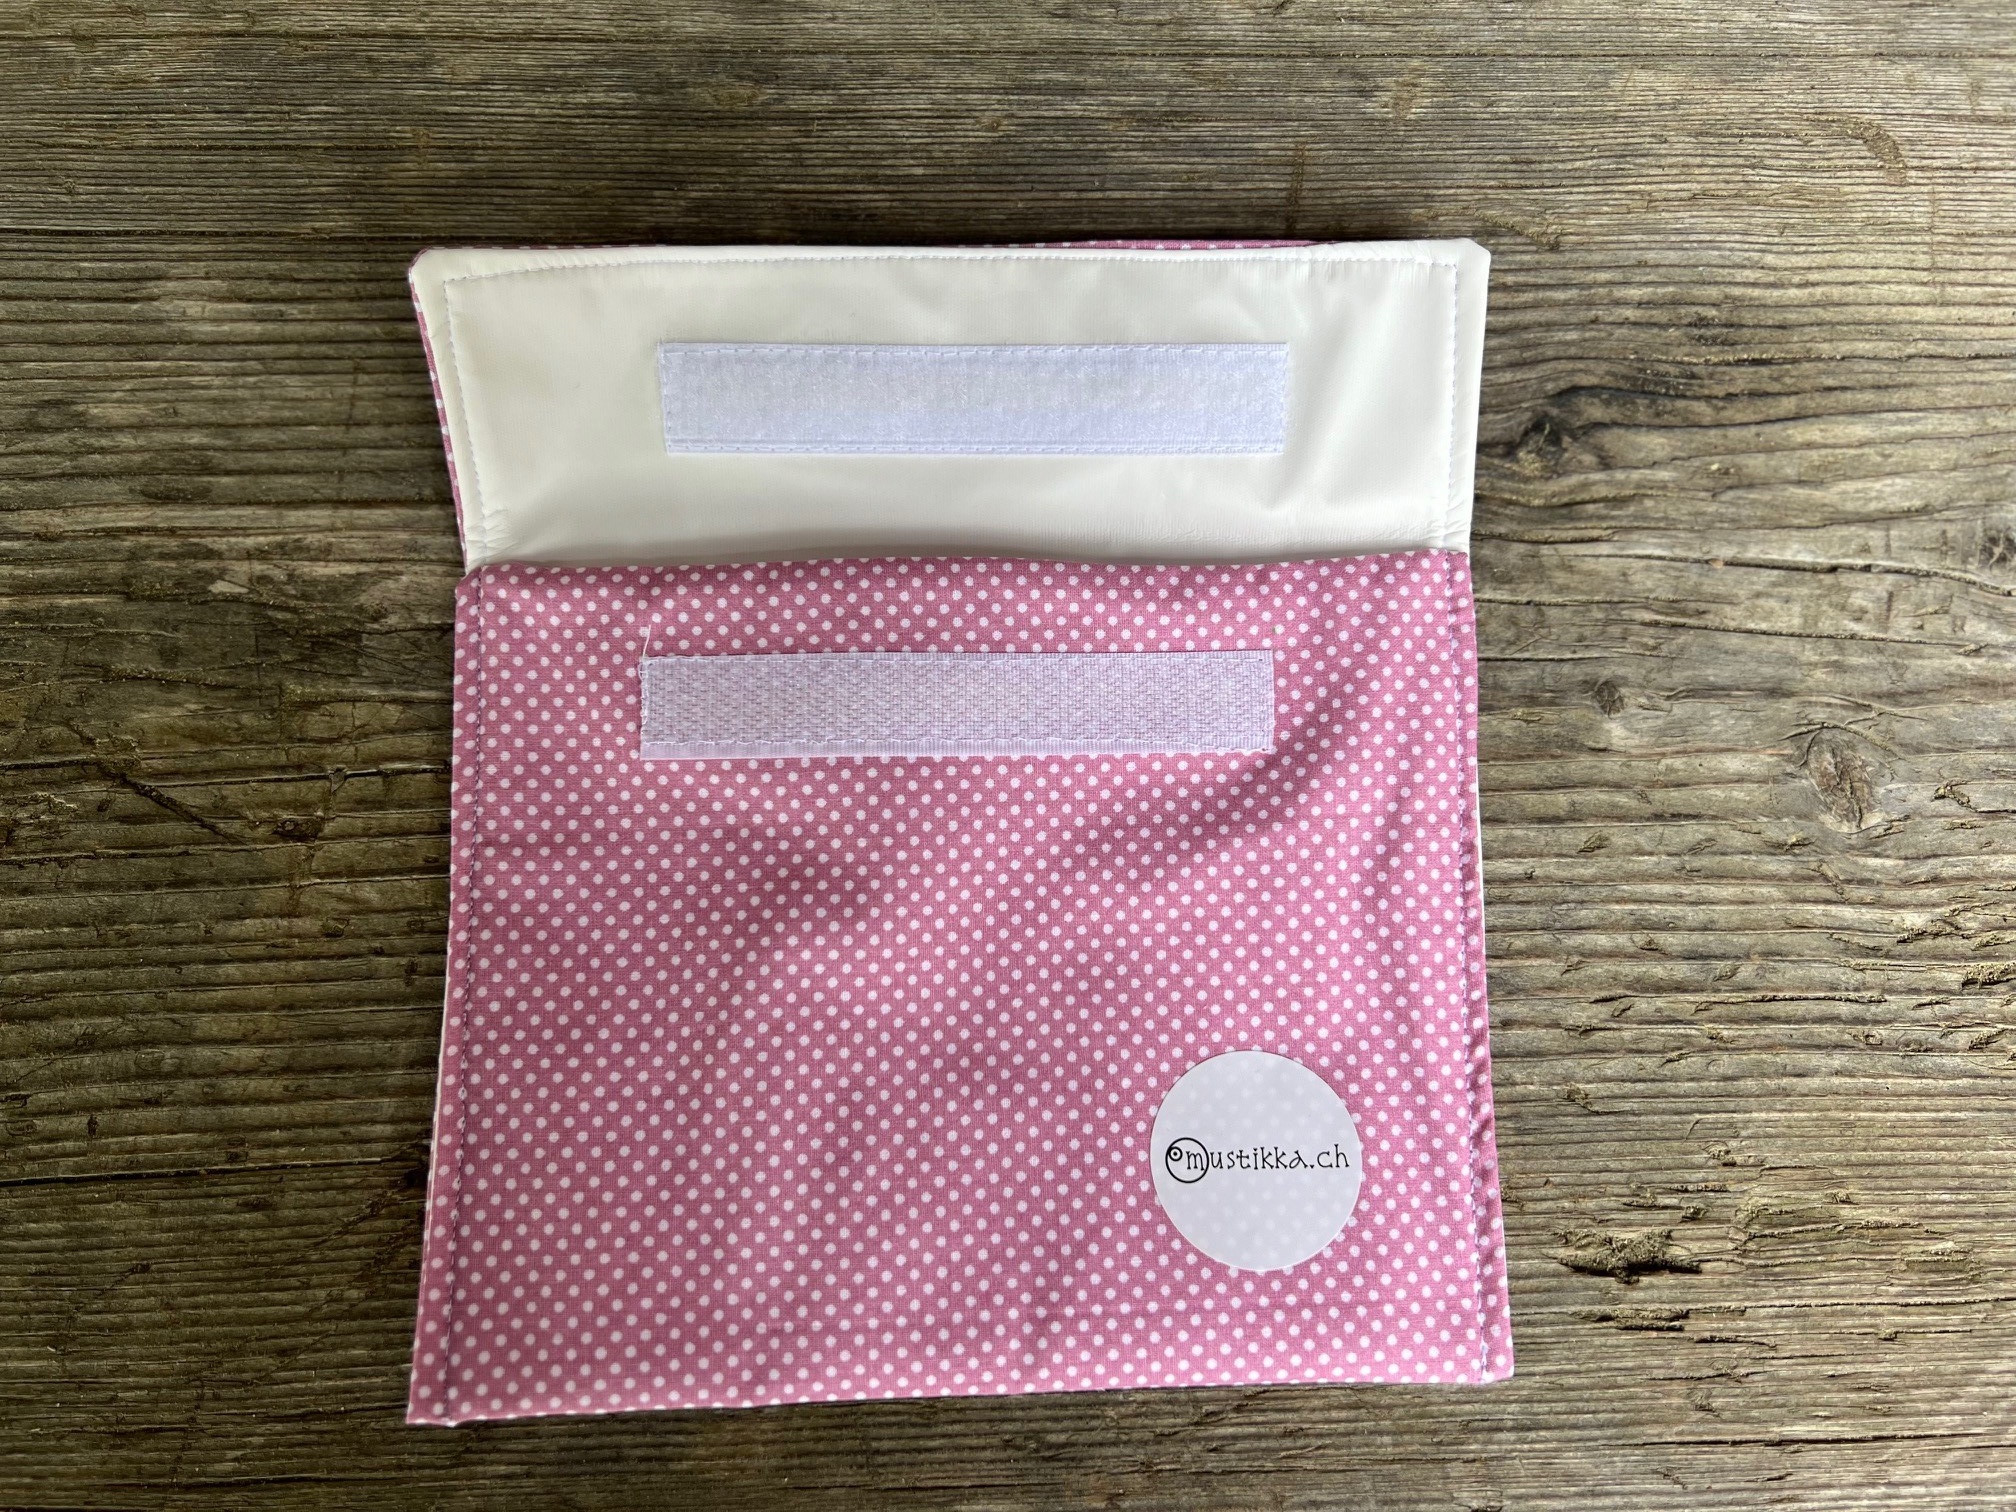 Snackbag pinkfarben - Upcycling Material!